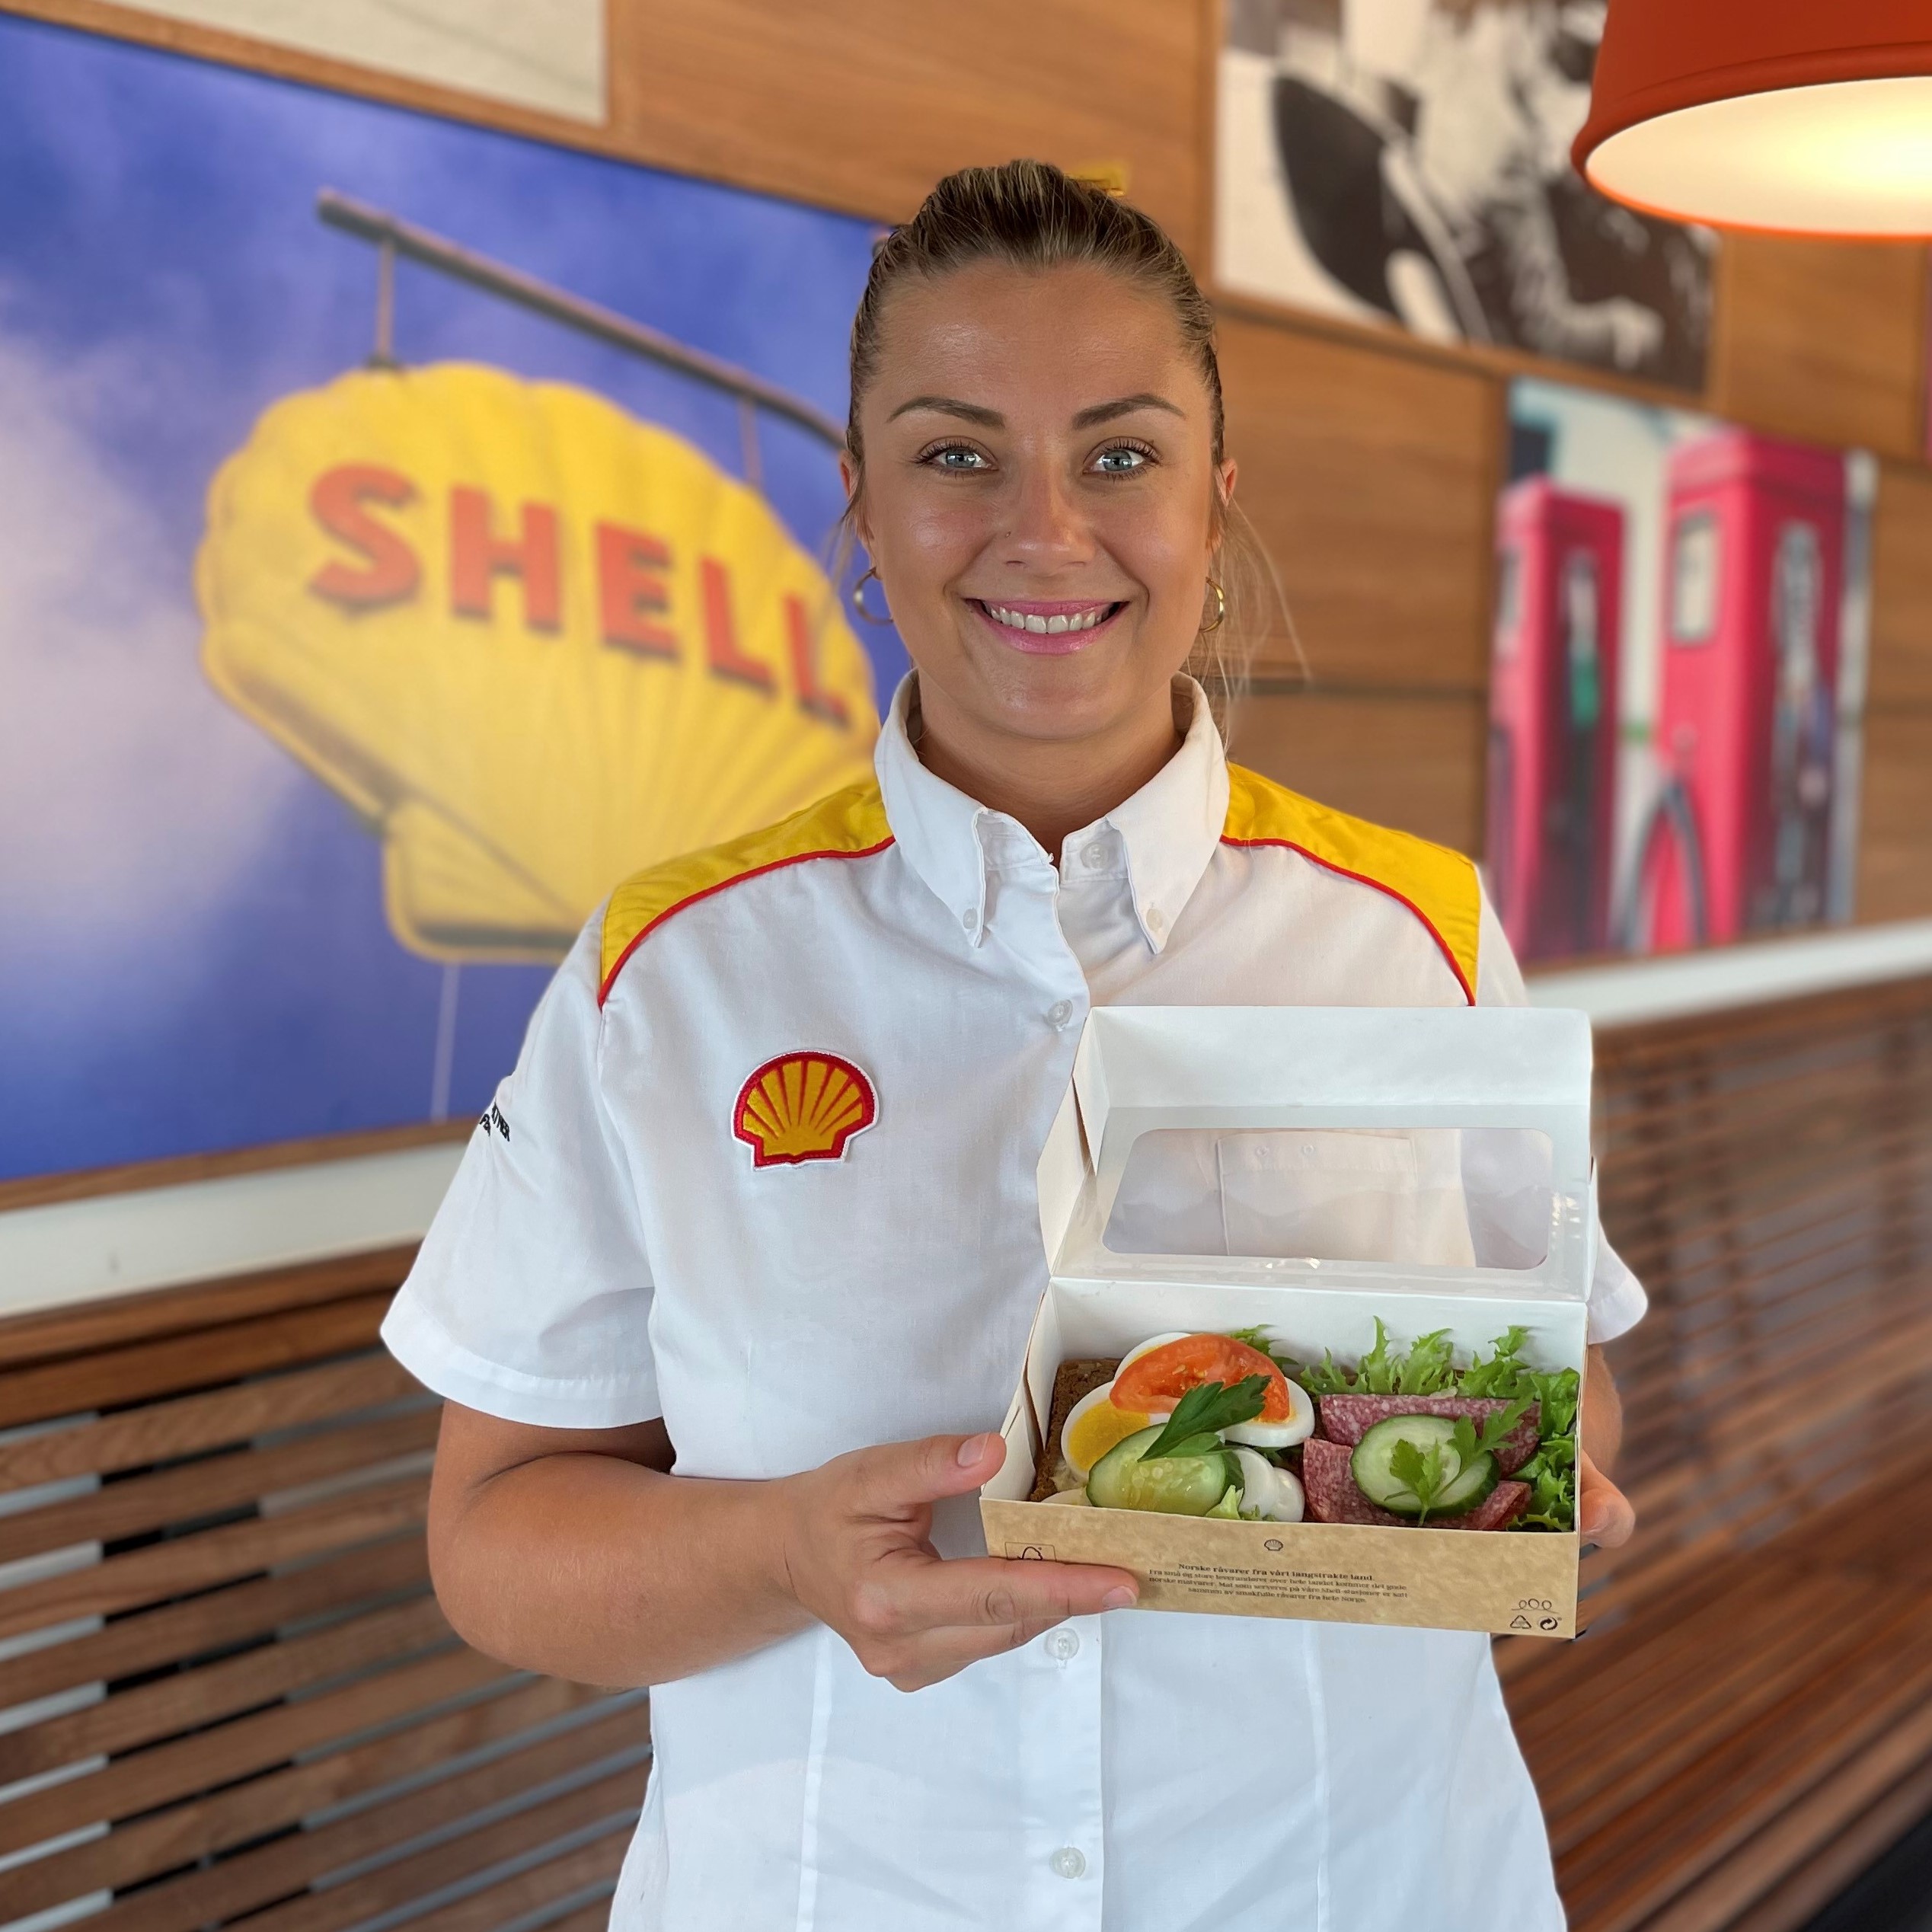 Shell medarbeider matpakke